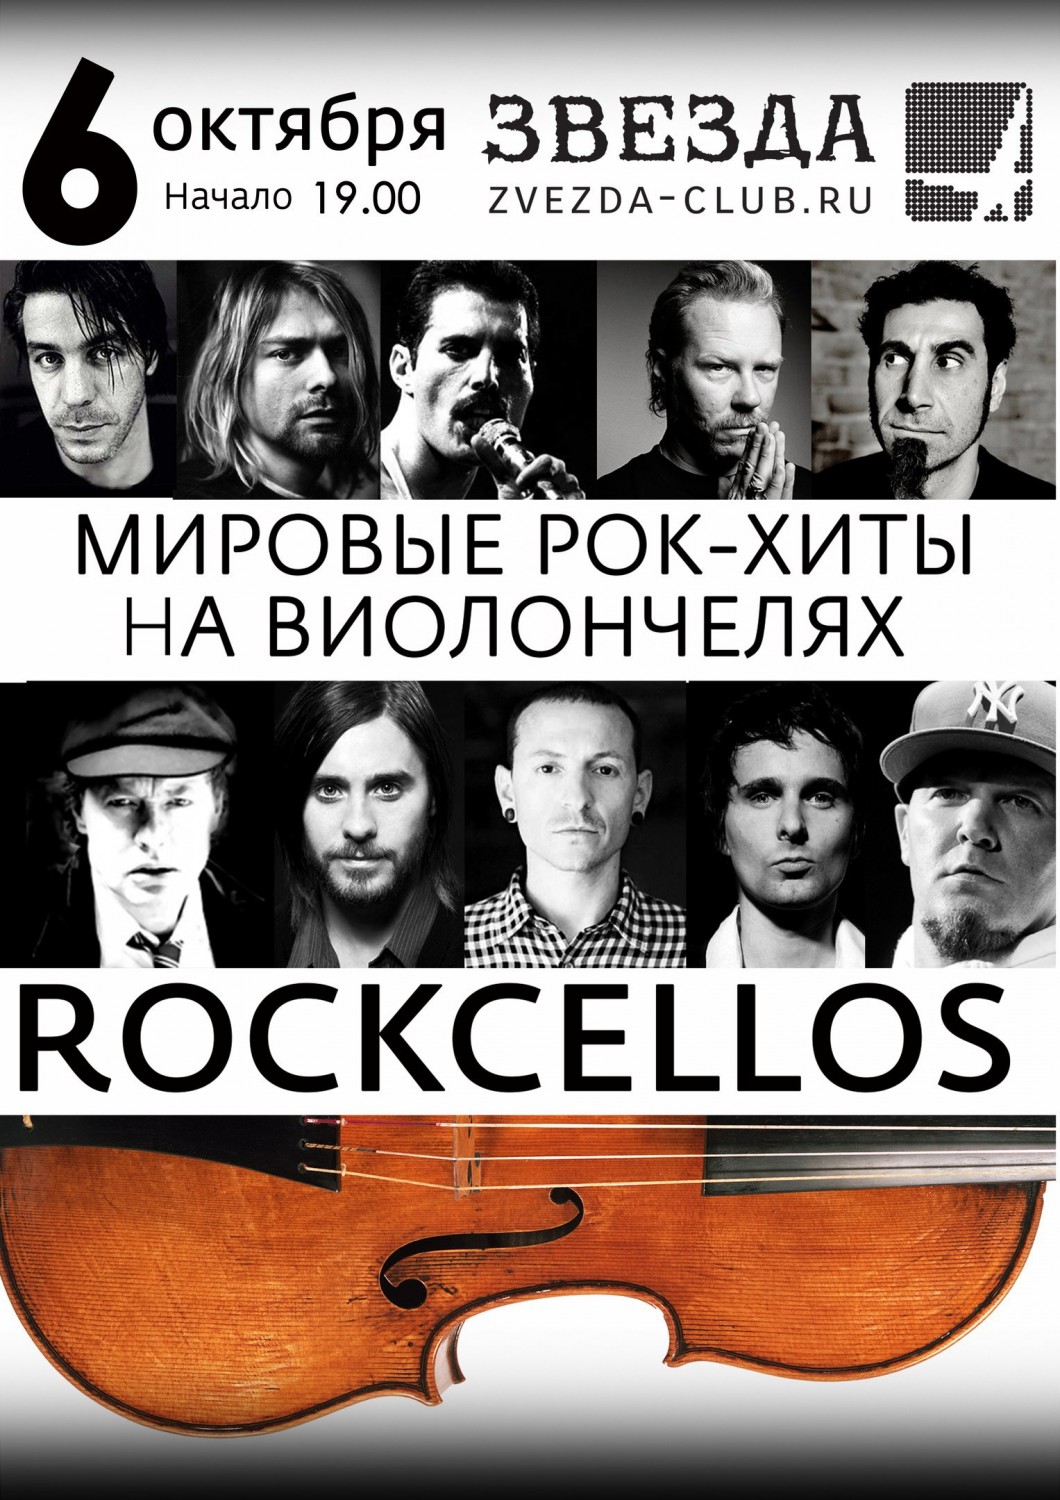 Мировые рок концерты. Рокселлос группа. Rockcellos концерт мировые рок. Мировые рок хиты на виолончелях. Rockcellos: мировые рок-хиты на виолончелях.